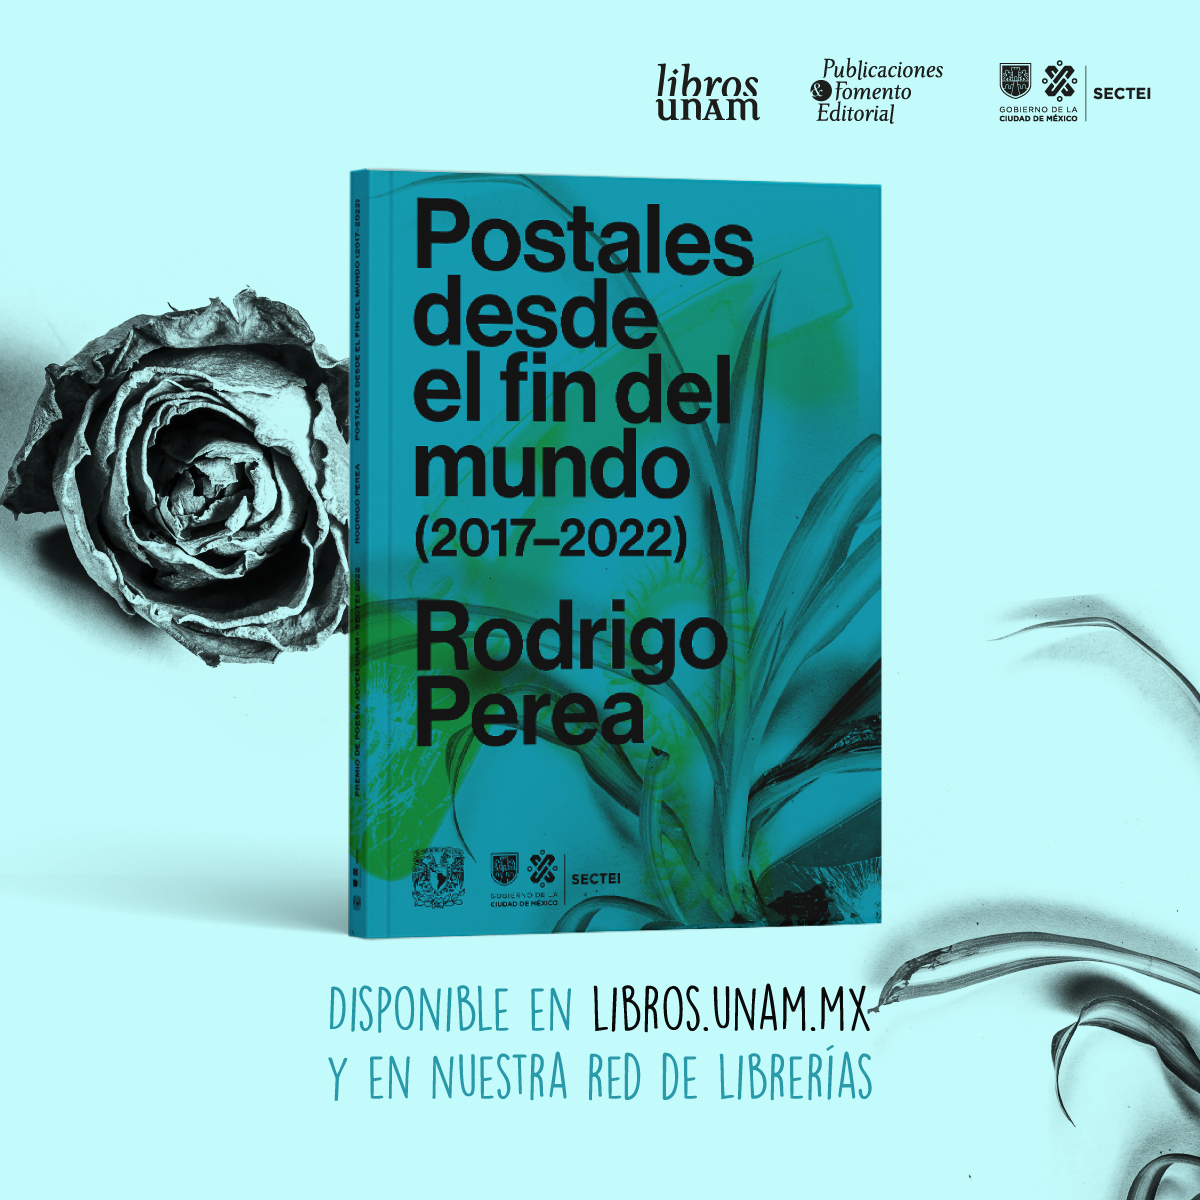 🔥¿Ya leíste las «Postales desde el fin del mundo (2017-2022)», de Rodrigo Perea @ruyperea? 🖼️✒️ Con este libro obtuvo el Premio Poesía Joven UNAM-SECTEI 2022, que puedes adquirir en este enlace. ➡️ bit.ly/4a5EYZ8 📚 @SECTEI_CDMX